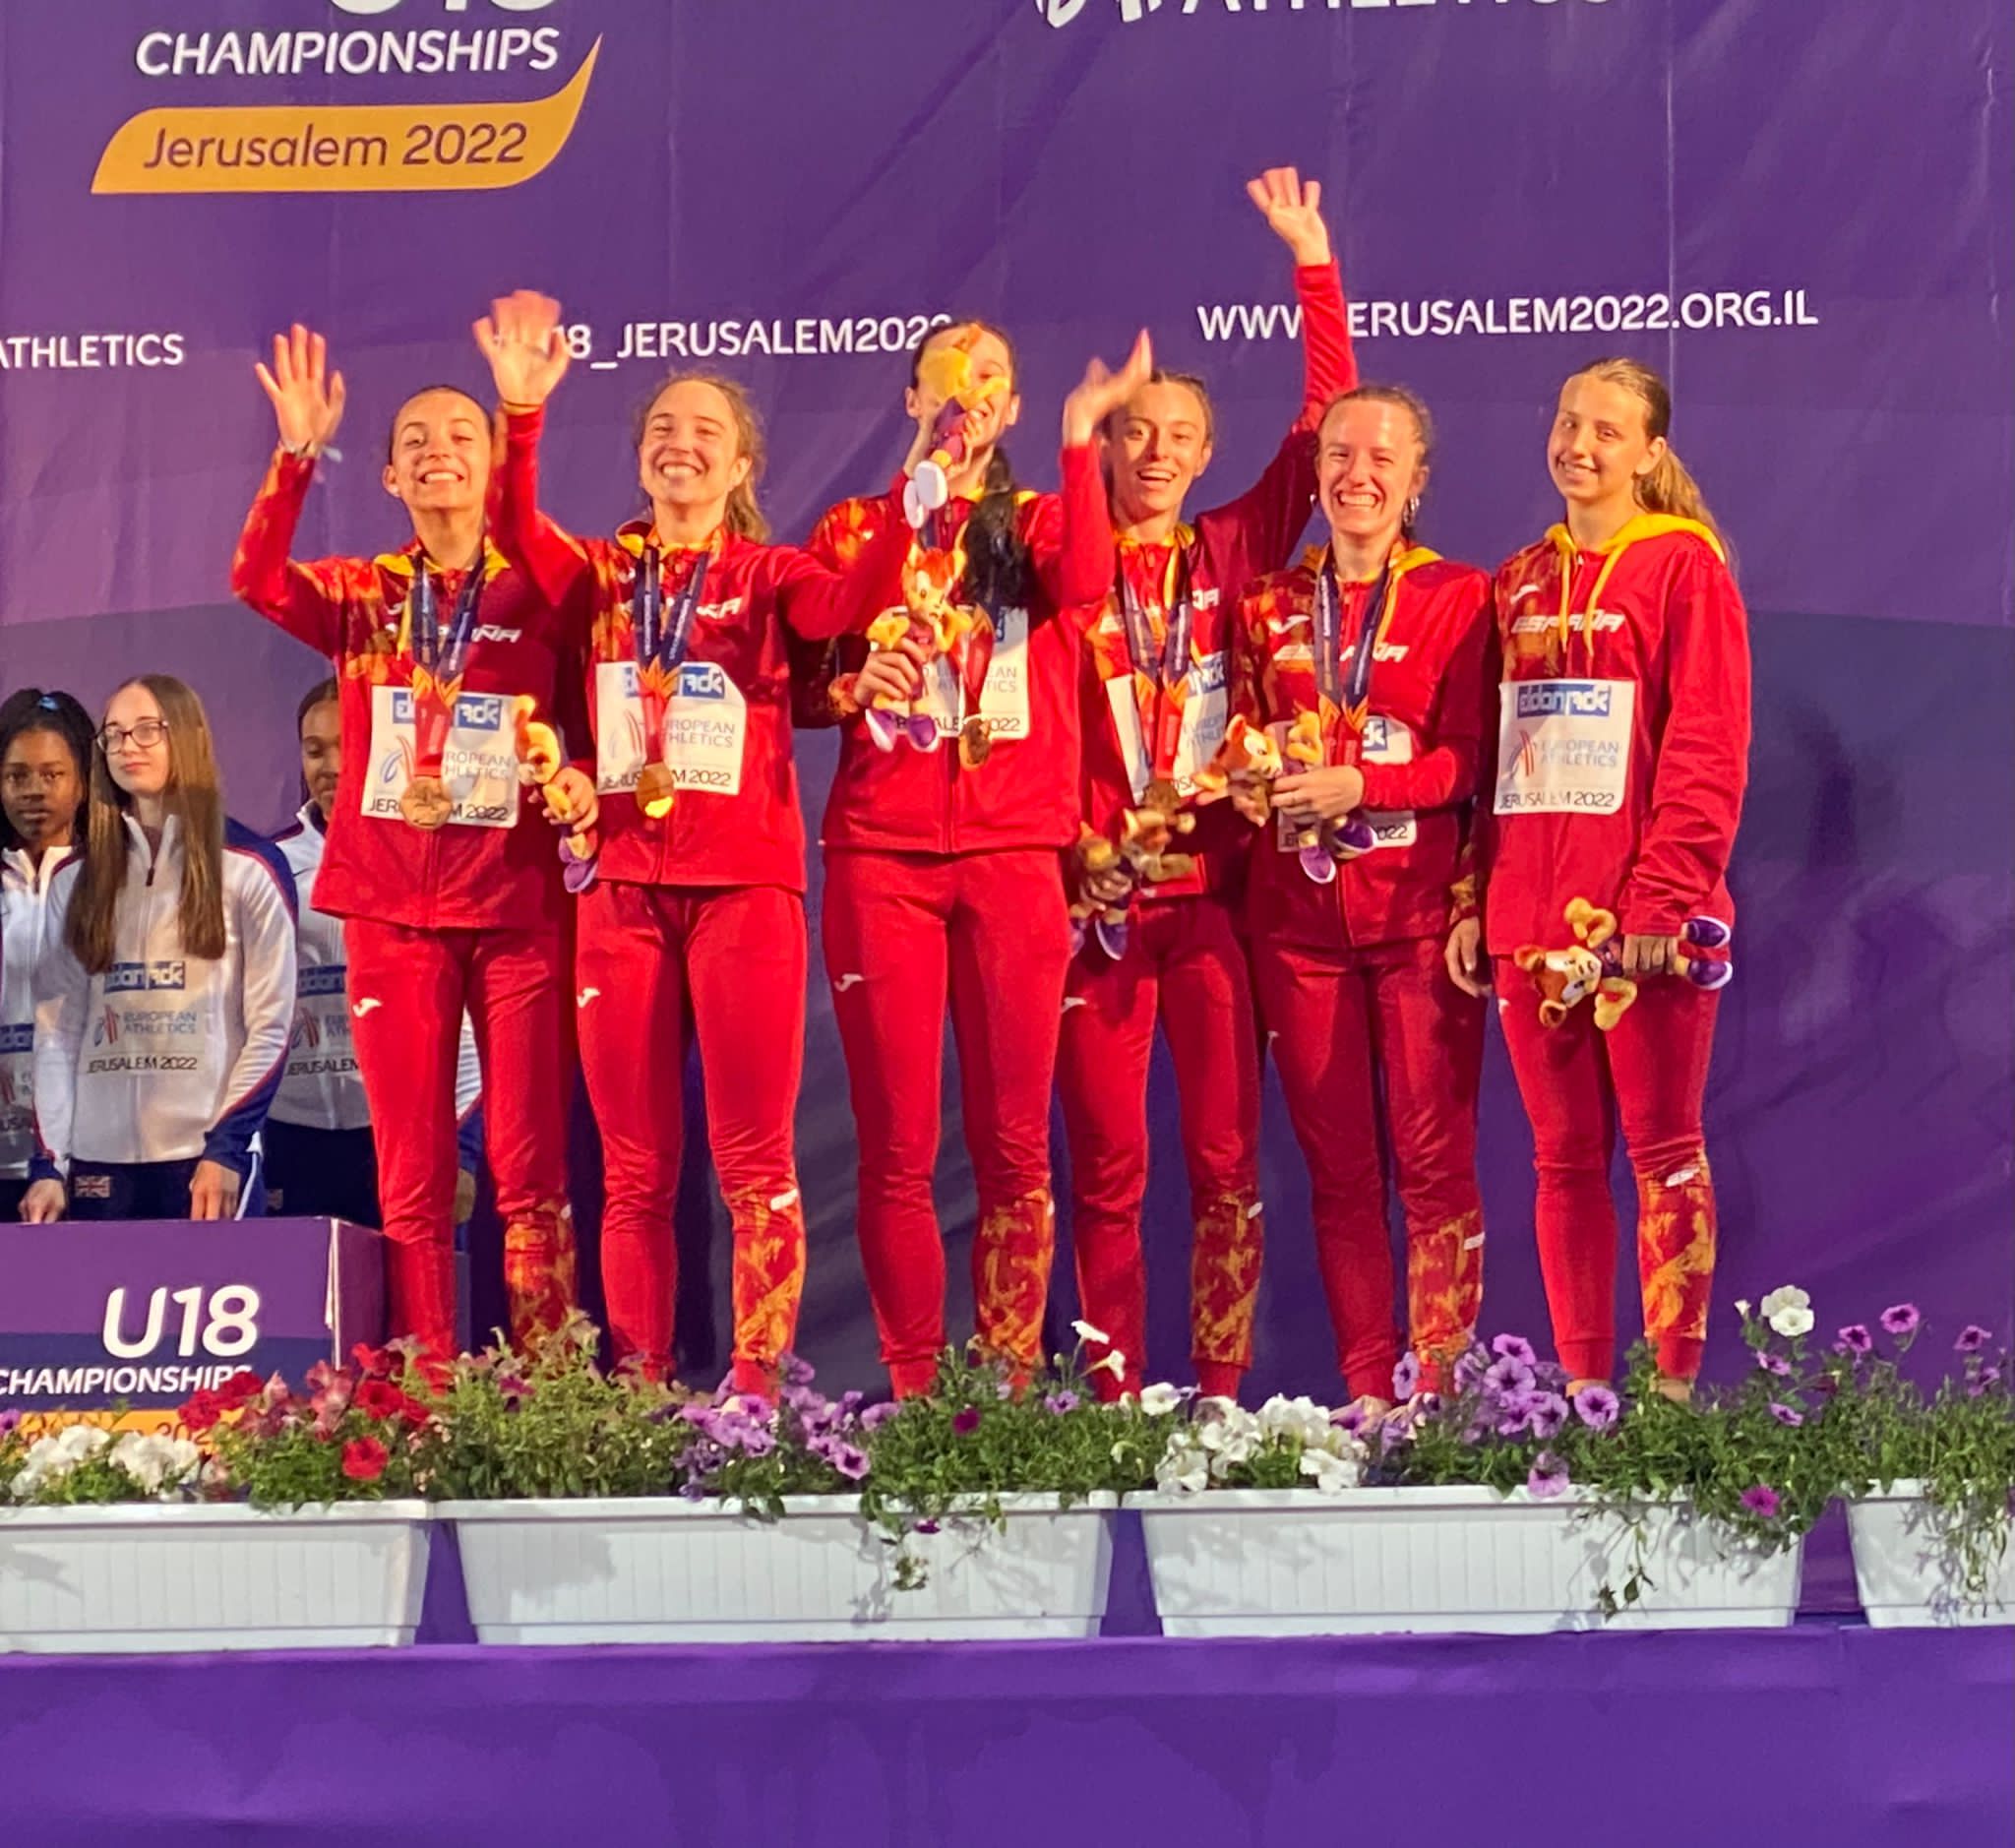 La atleta de Alcorcón, Laura Martínez, triunfa en el Campeonato de Europa de Atletismo